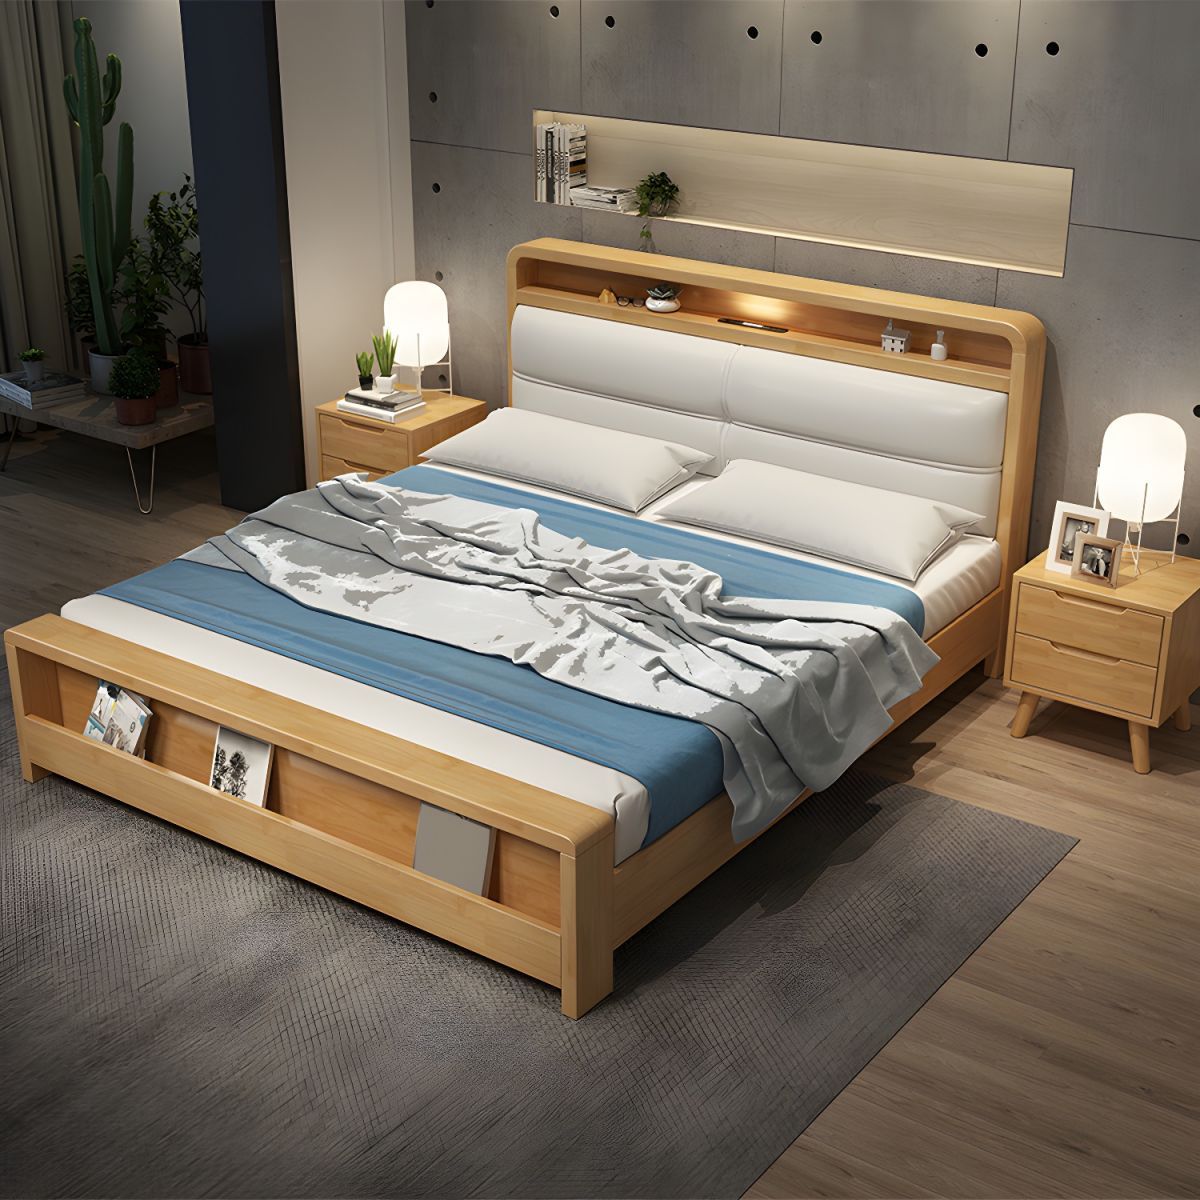 Giường ngủ gỗ tự nhiên bọc nệm tinh tế